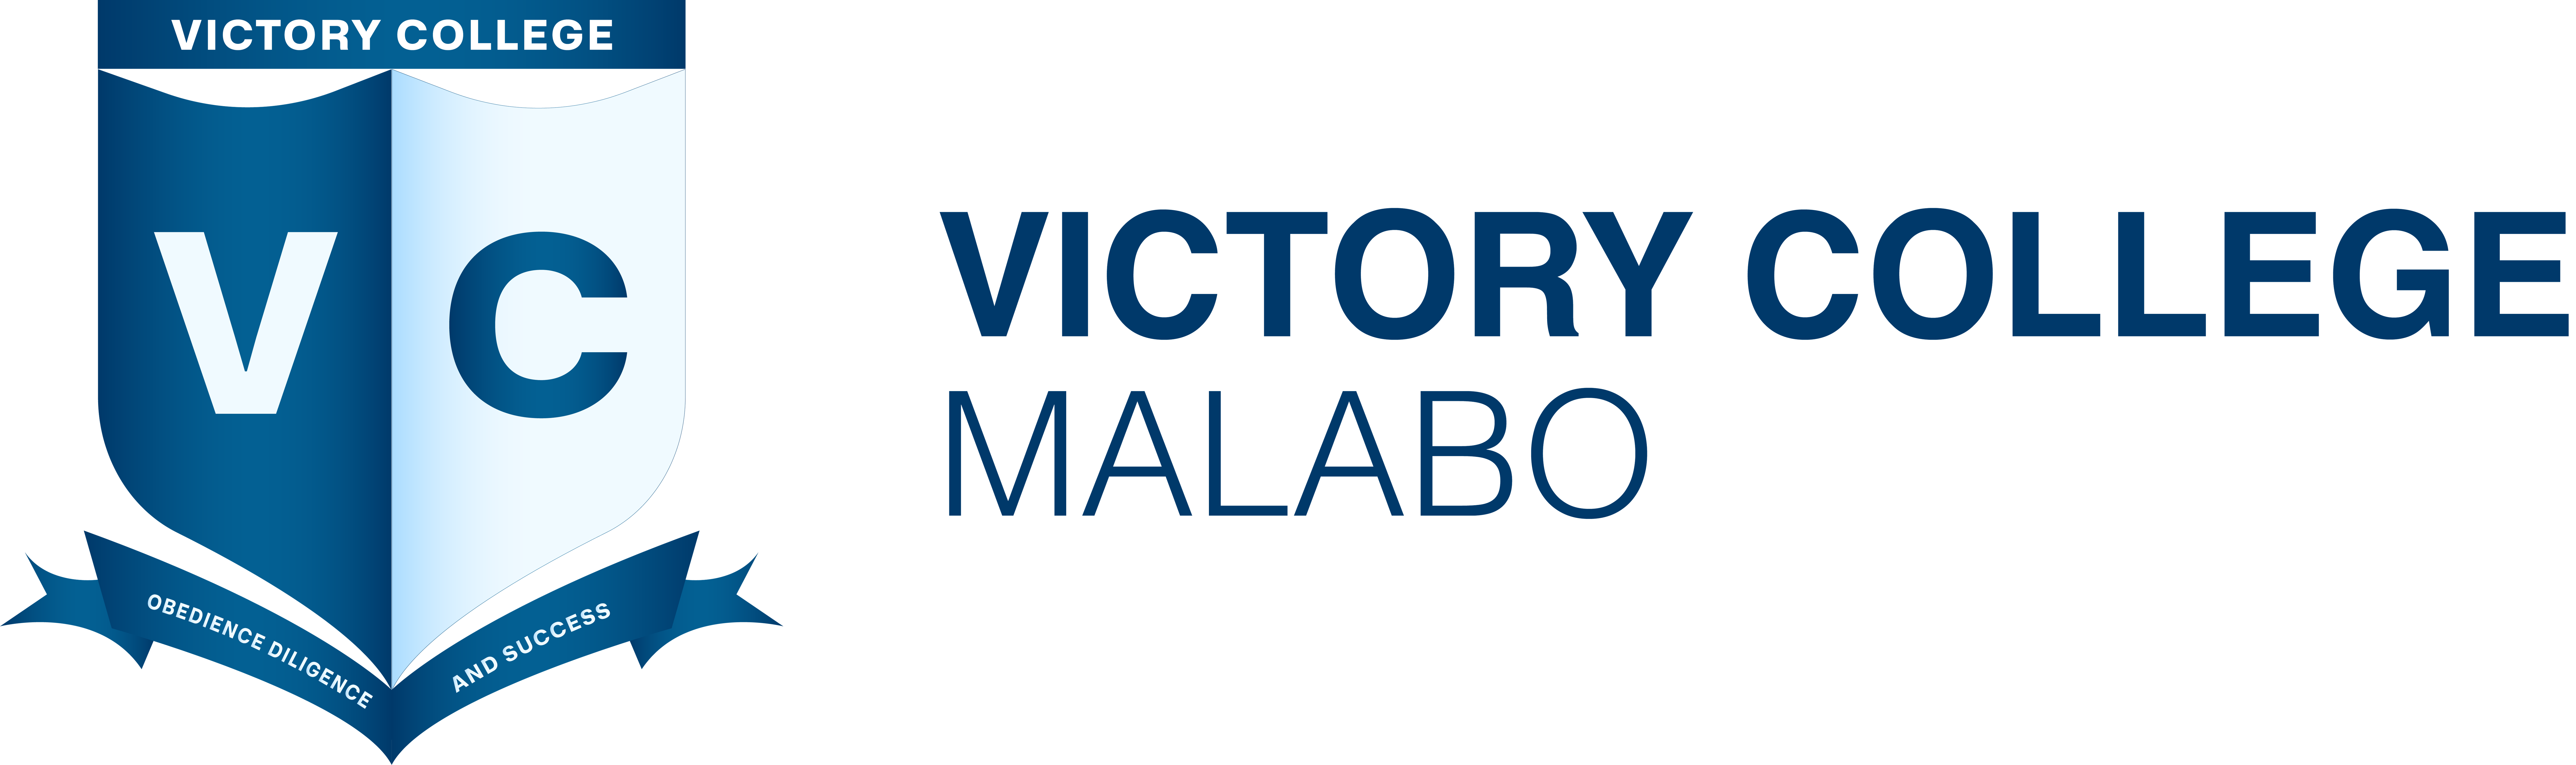 Victory College Malabo Logo